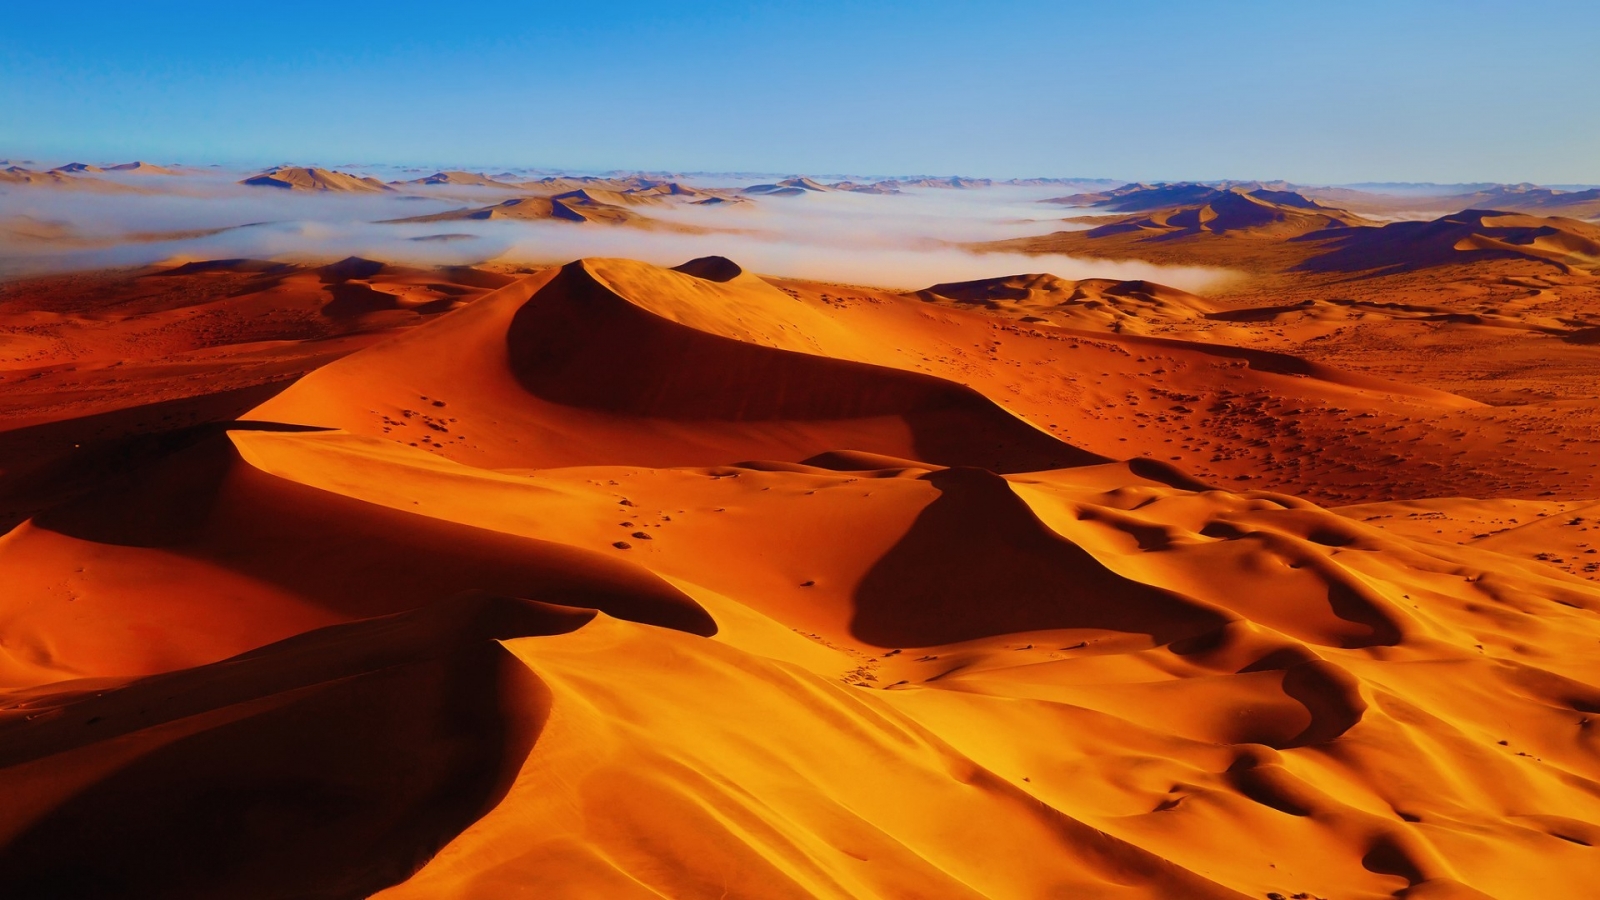 Beautiful Desert Landscape for 1600 x 900 HDTV resolution